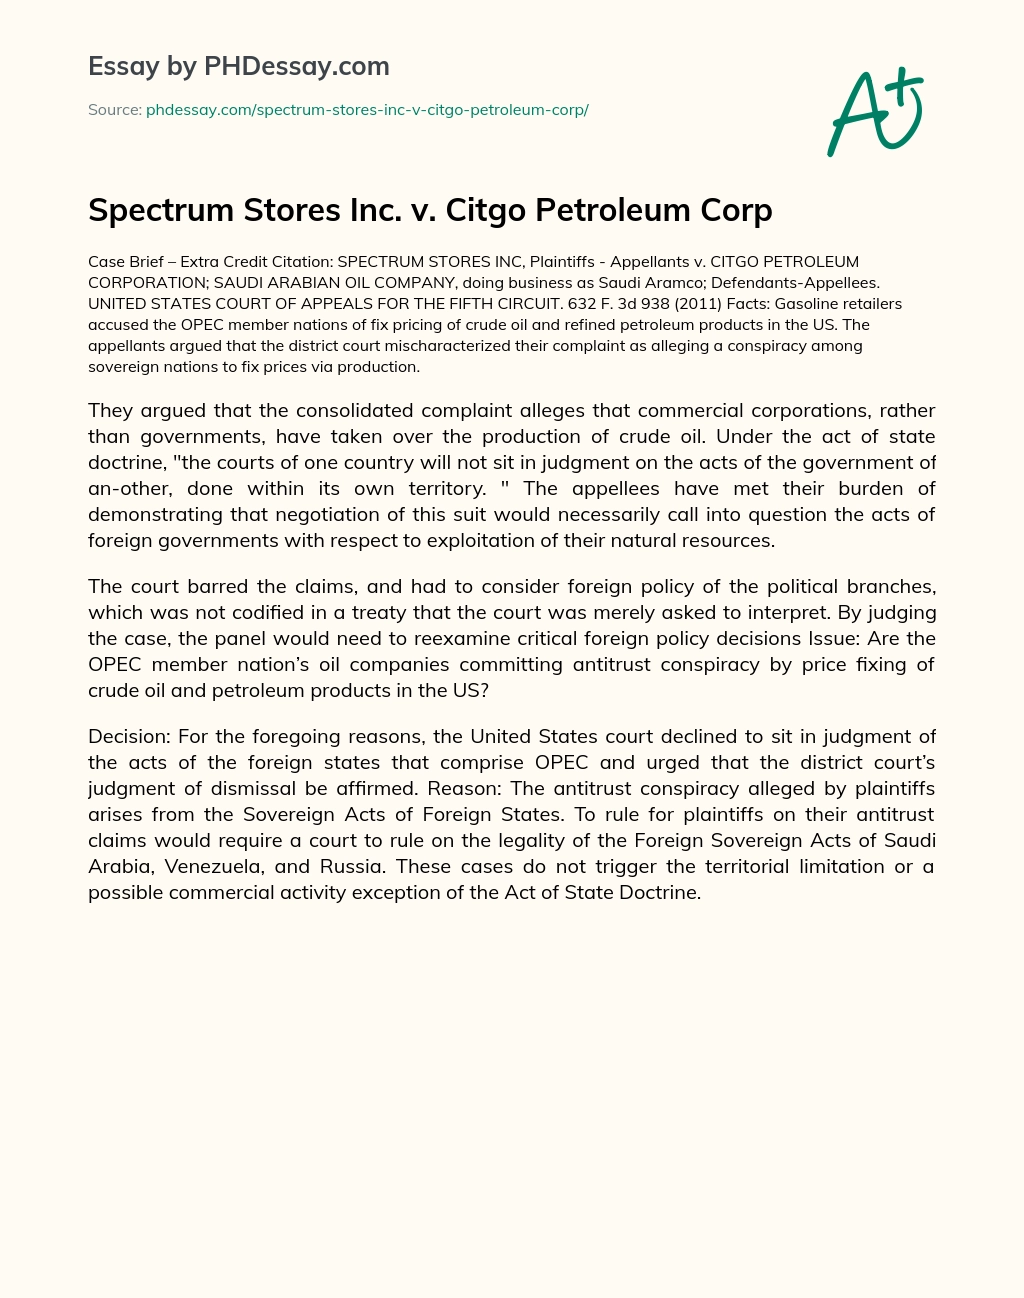 Spectrum Stores Inc. v. Citgo Petroleum Corp essay